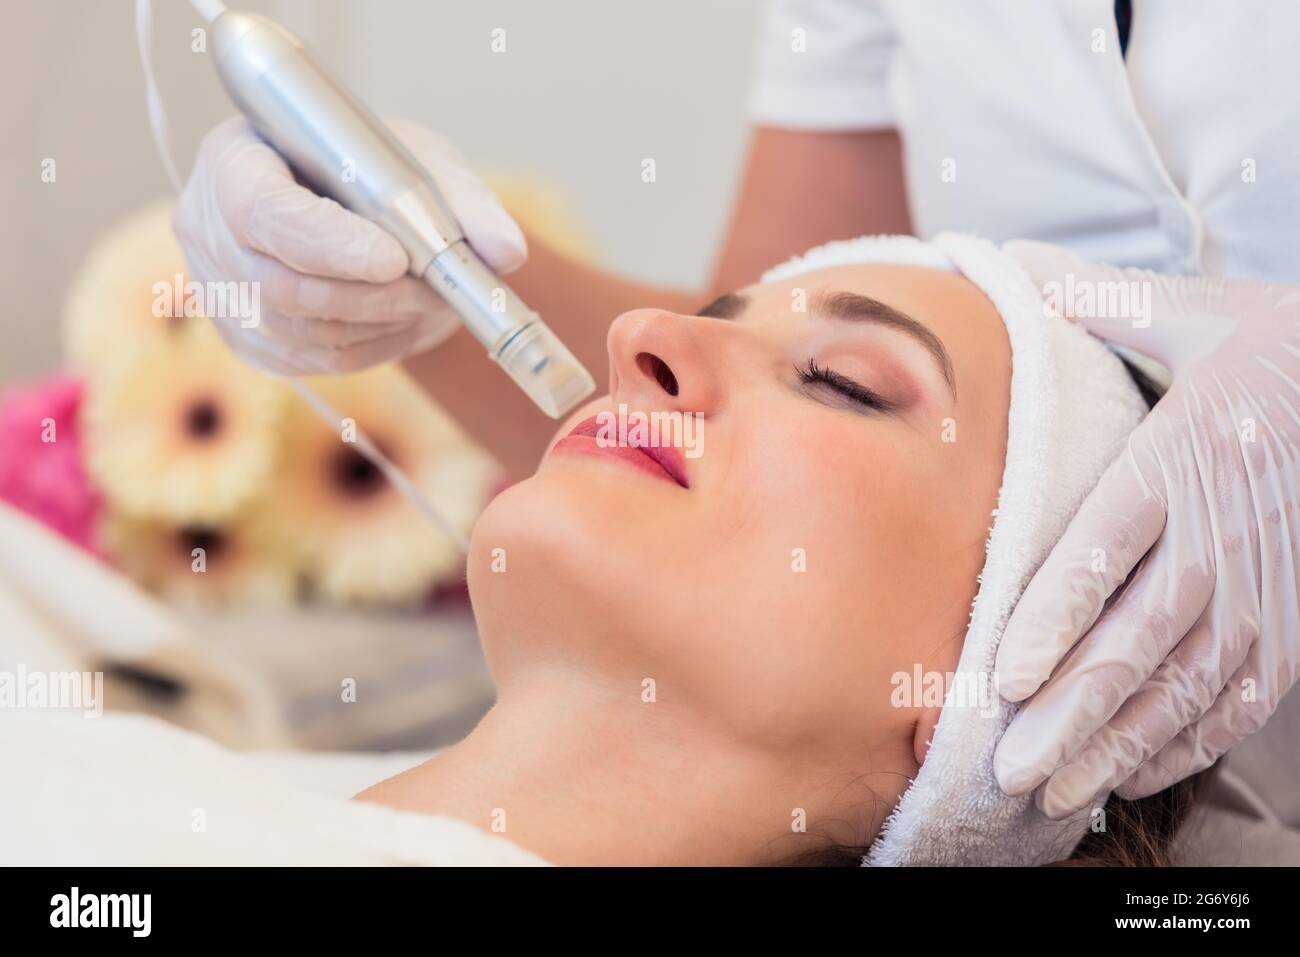 Primer plano de la cara de una mujer que se relaja en un moderno centro de belleza durante el tratamiento facial con tecnología innovadora para suavizar arrugas y rejuv Foto de stock